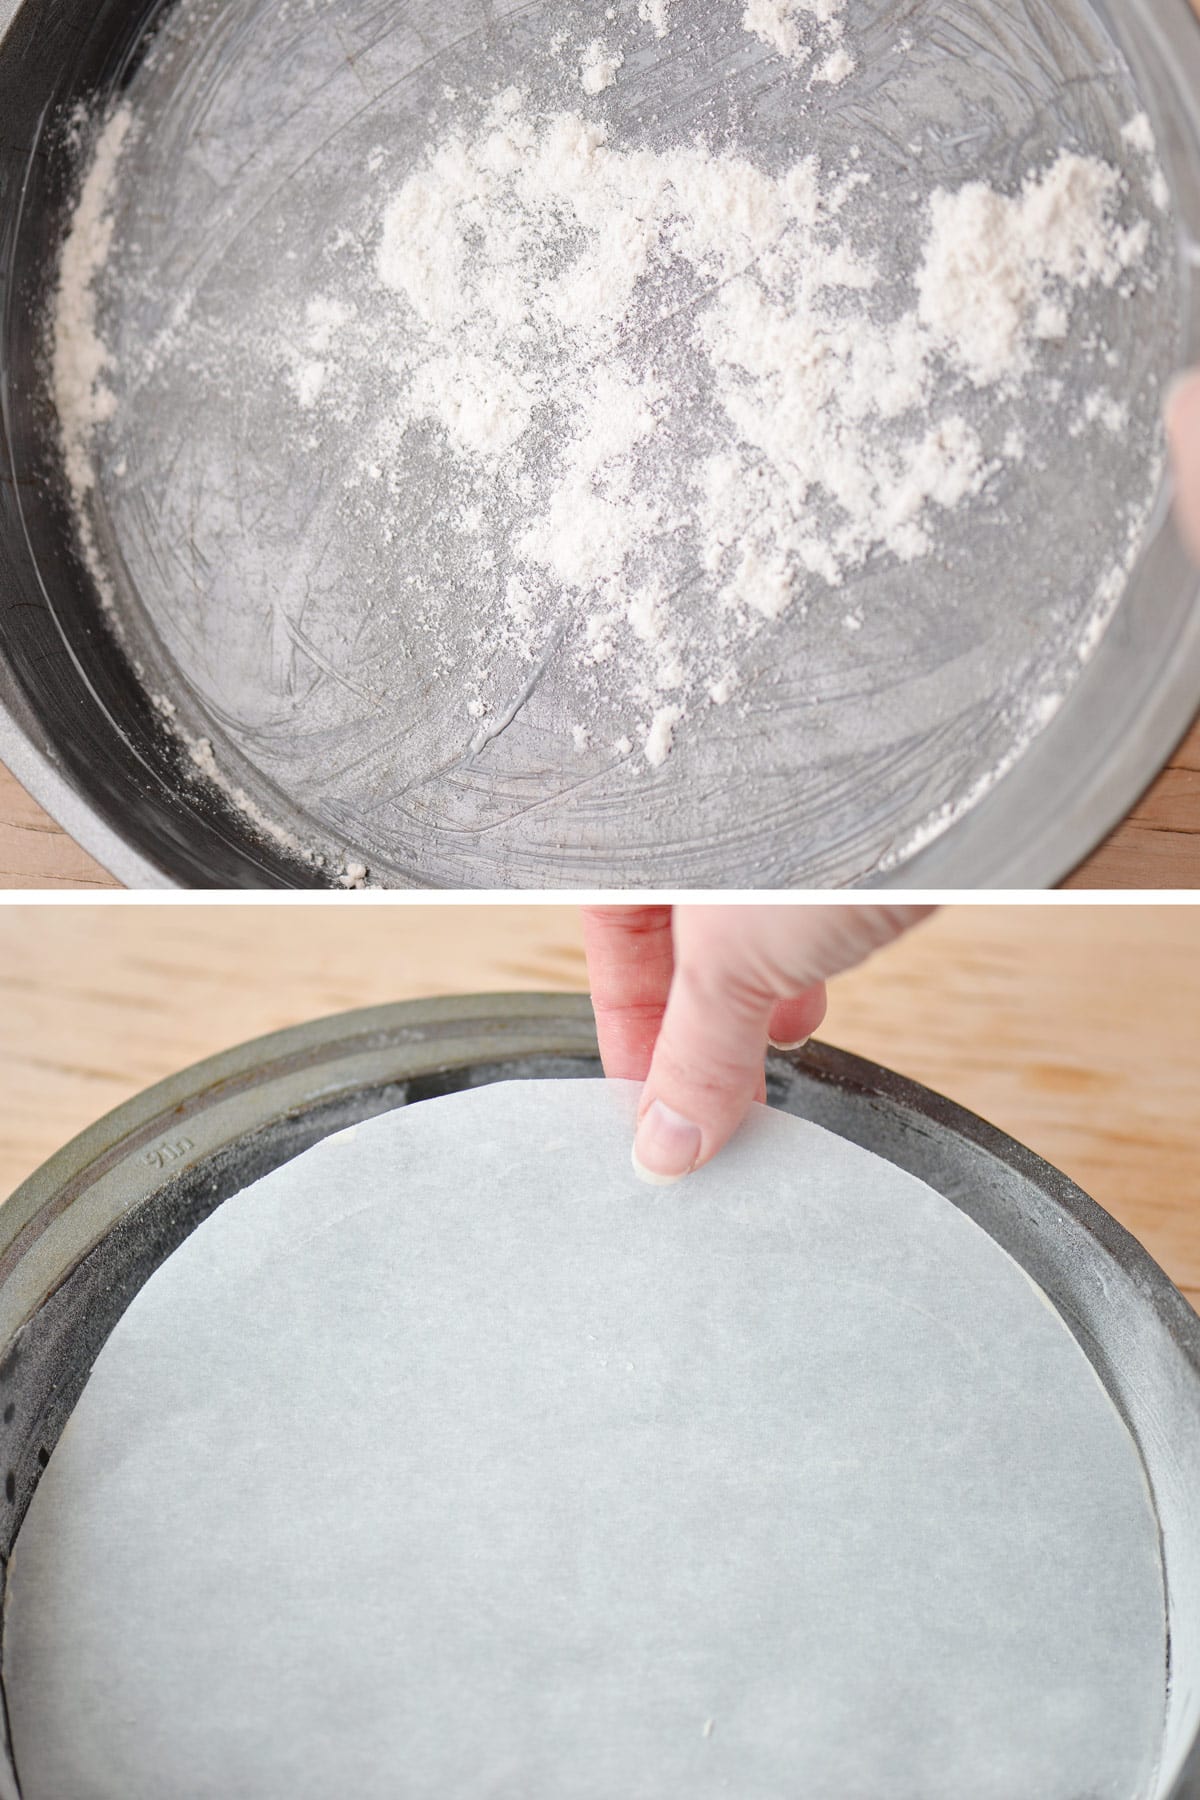 Preparing a round cake pan.